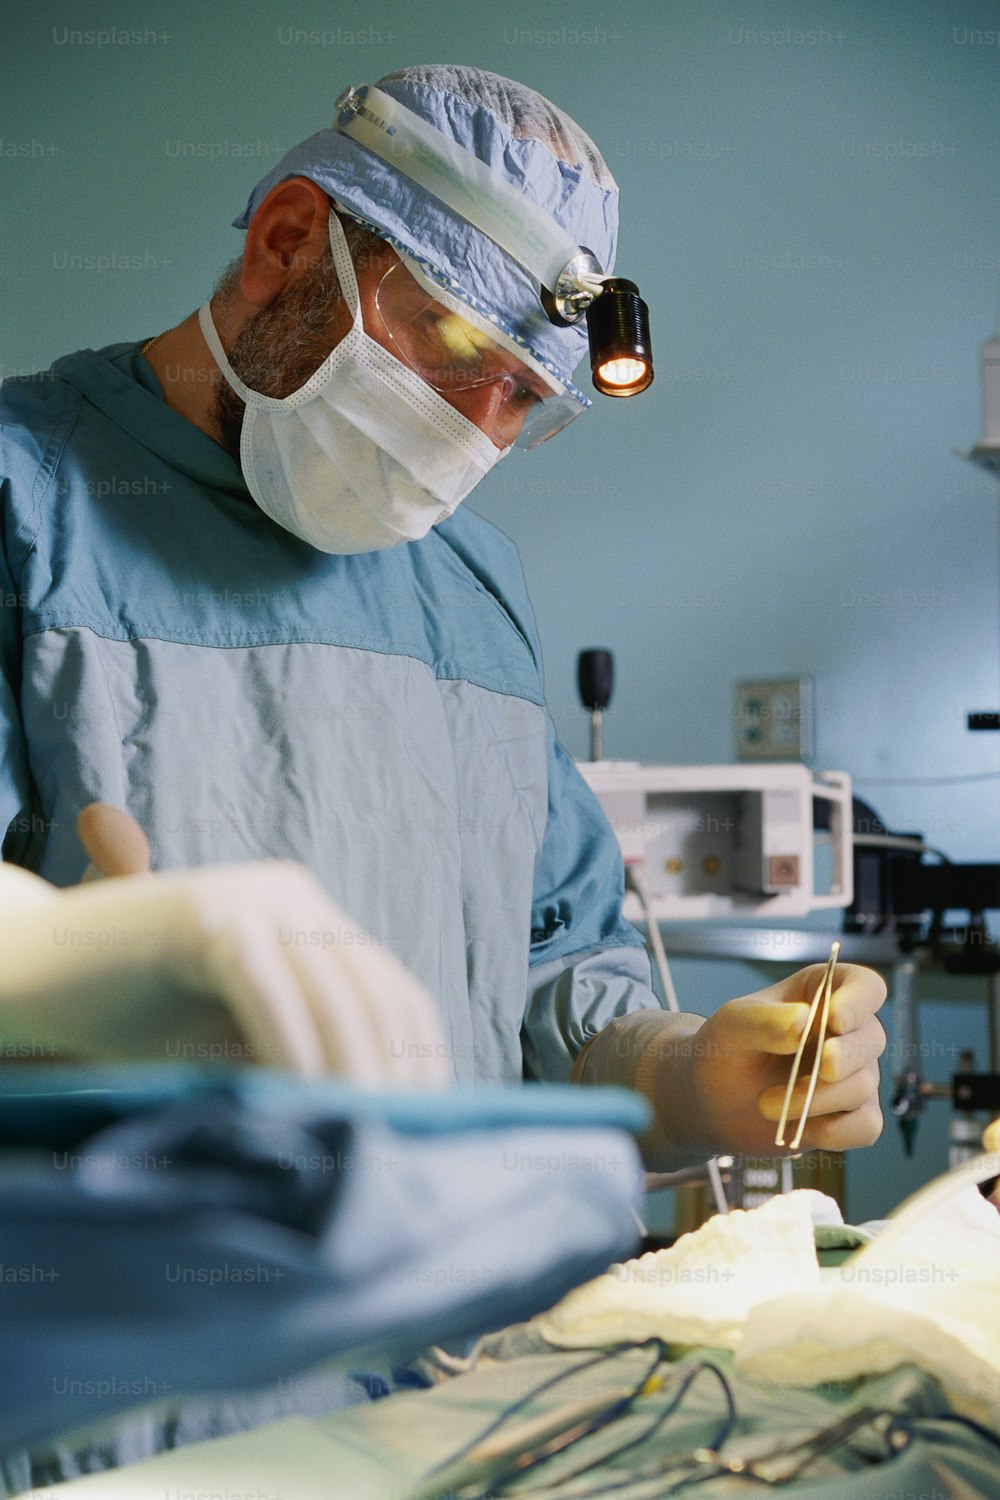 Un hombre con bata quirúrgica está realizando una cirugía